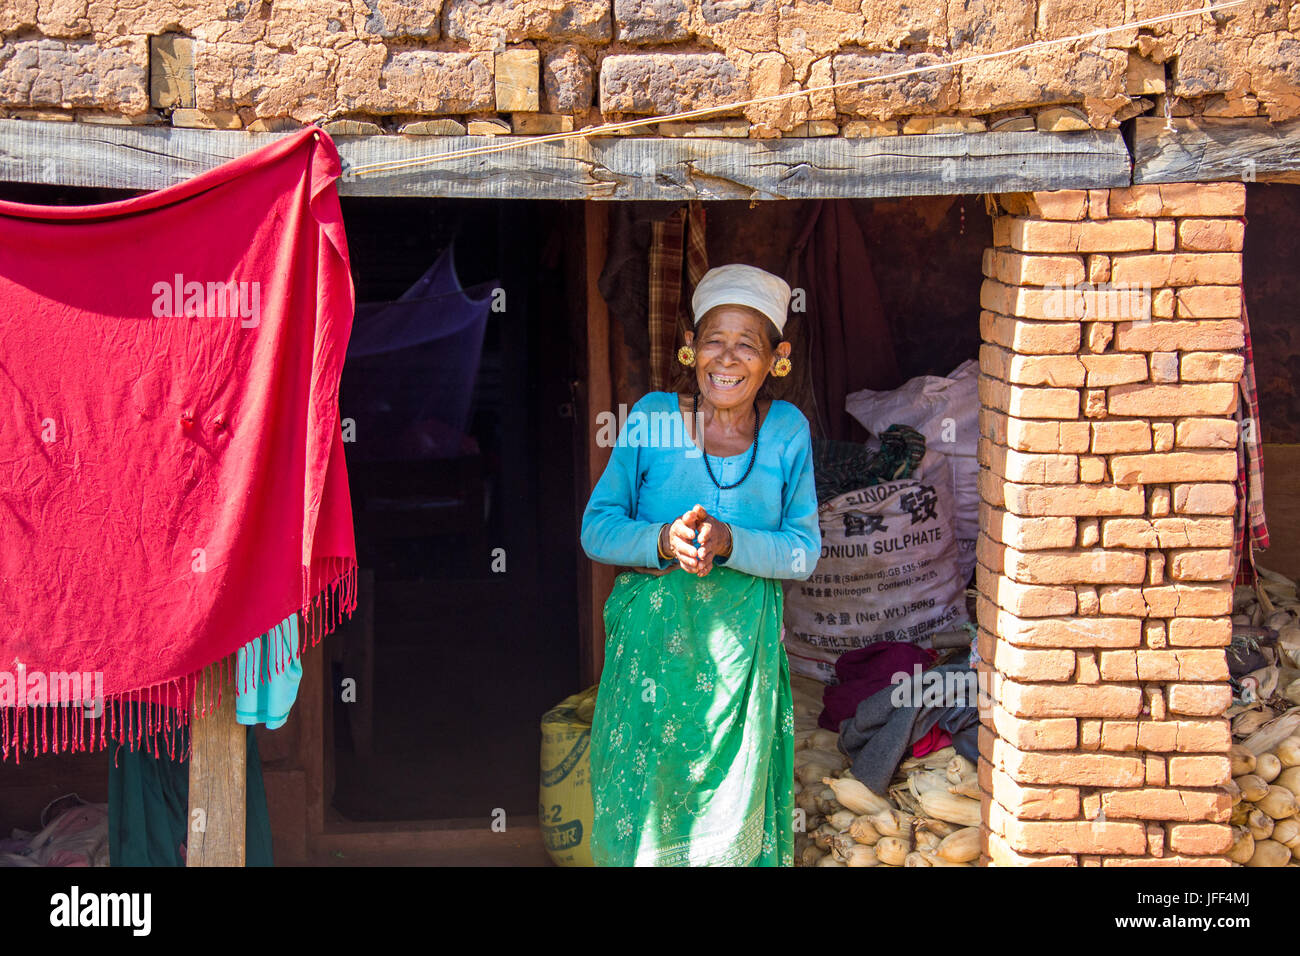 Donna nepalese apprezzato il lavoro di una ONG (baliyo ghar) ha fatto per lei, Nuwakot distretto del Nepal Foto Stock